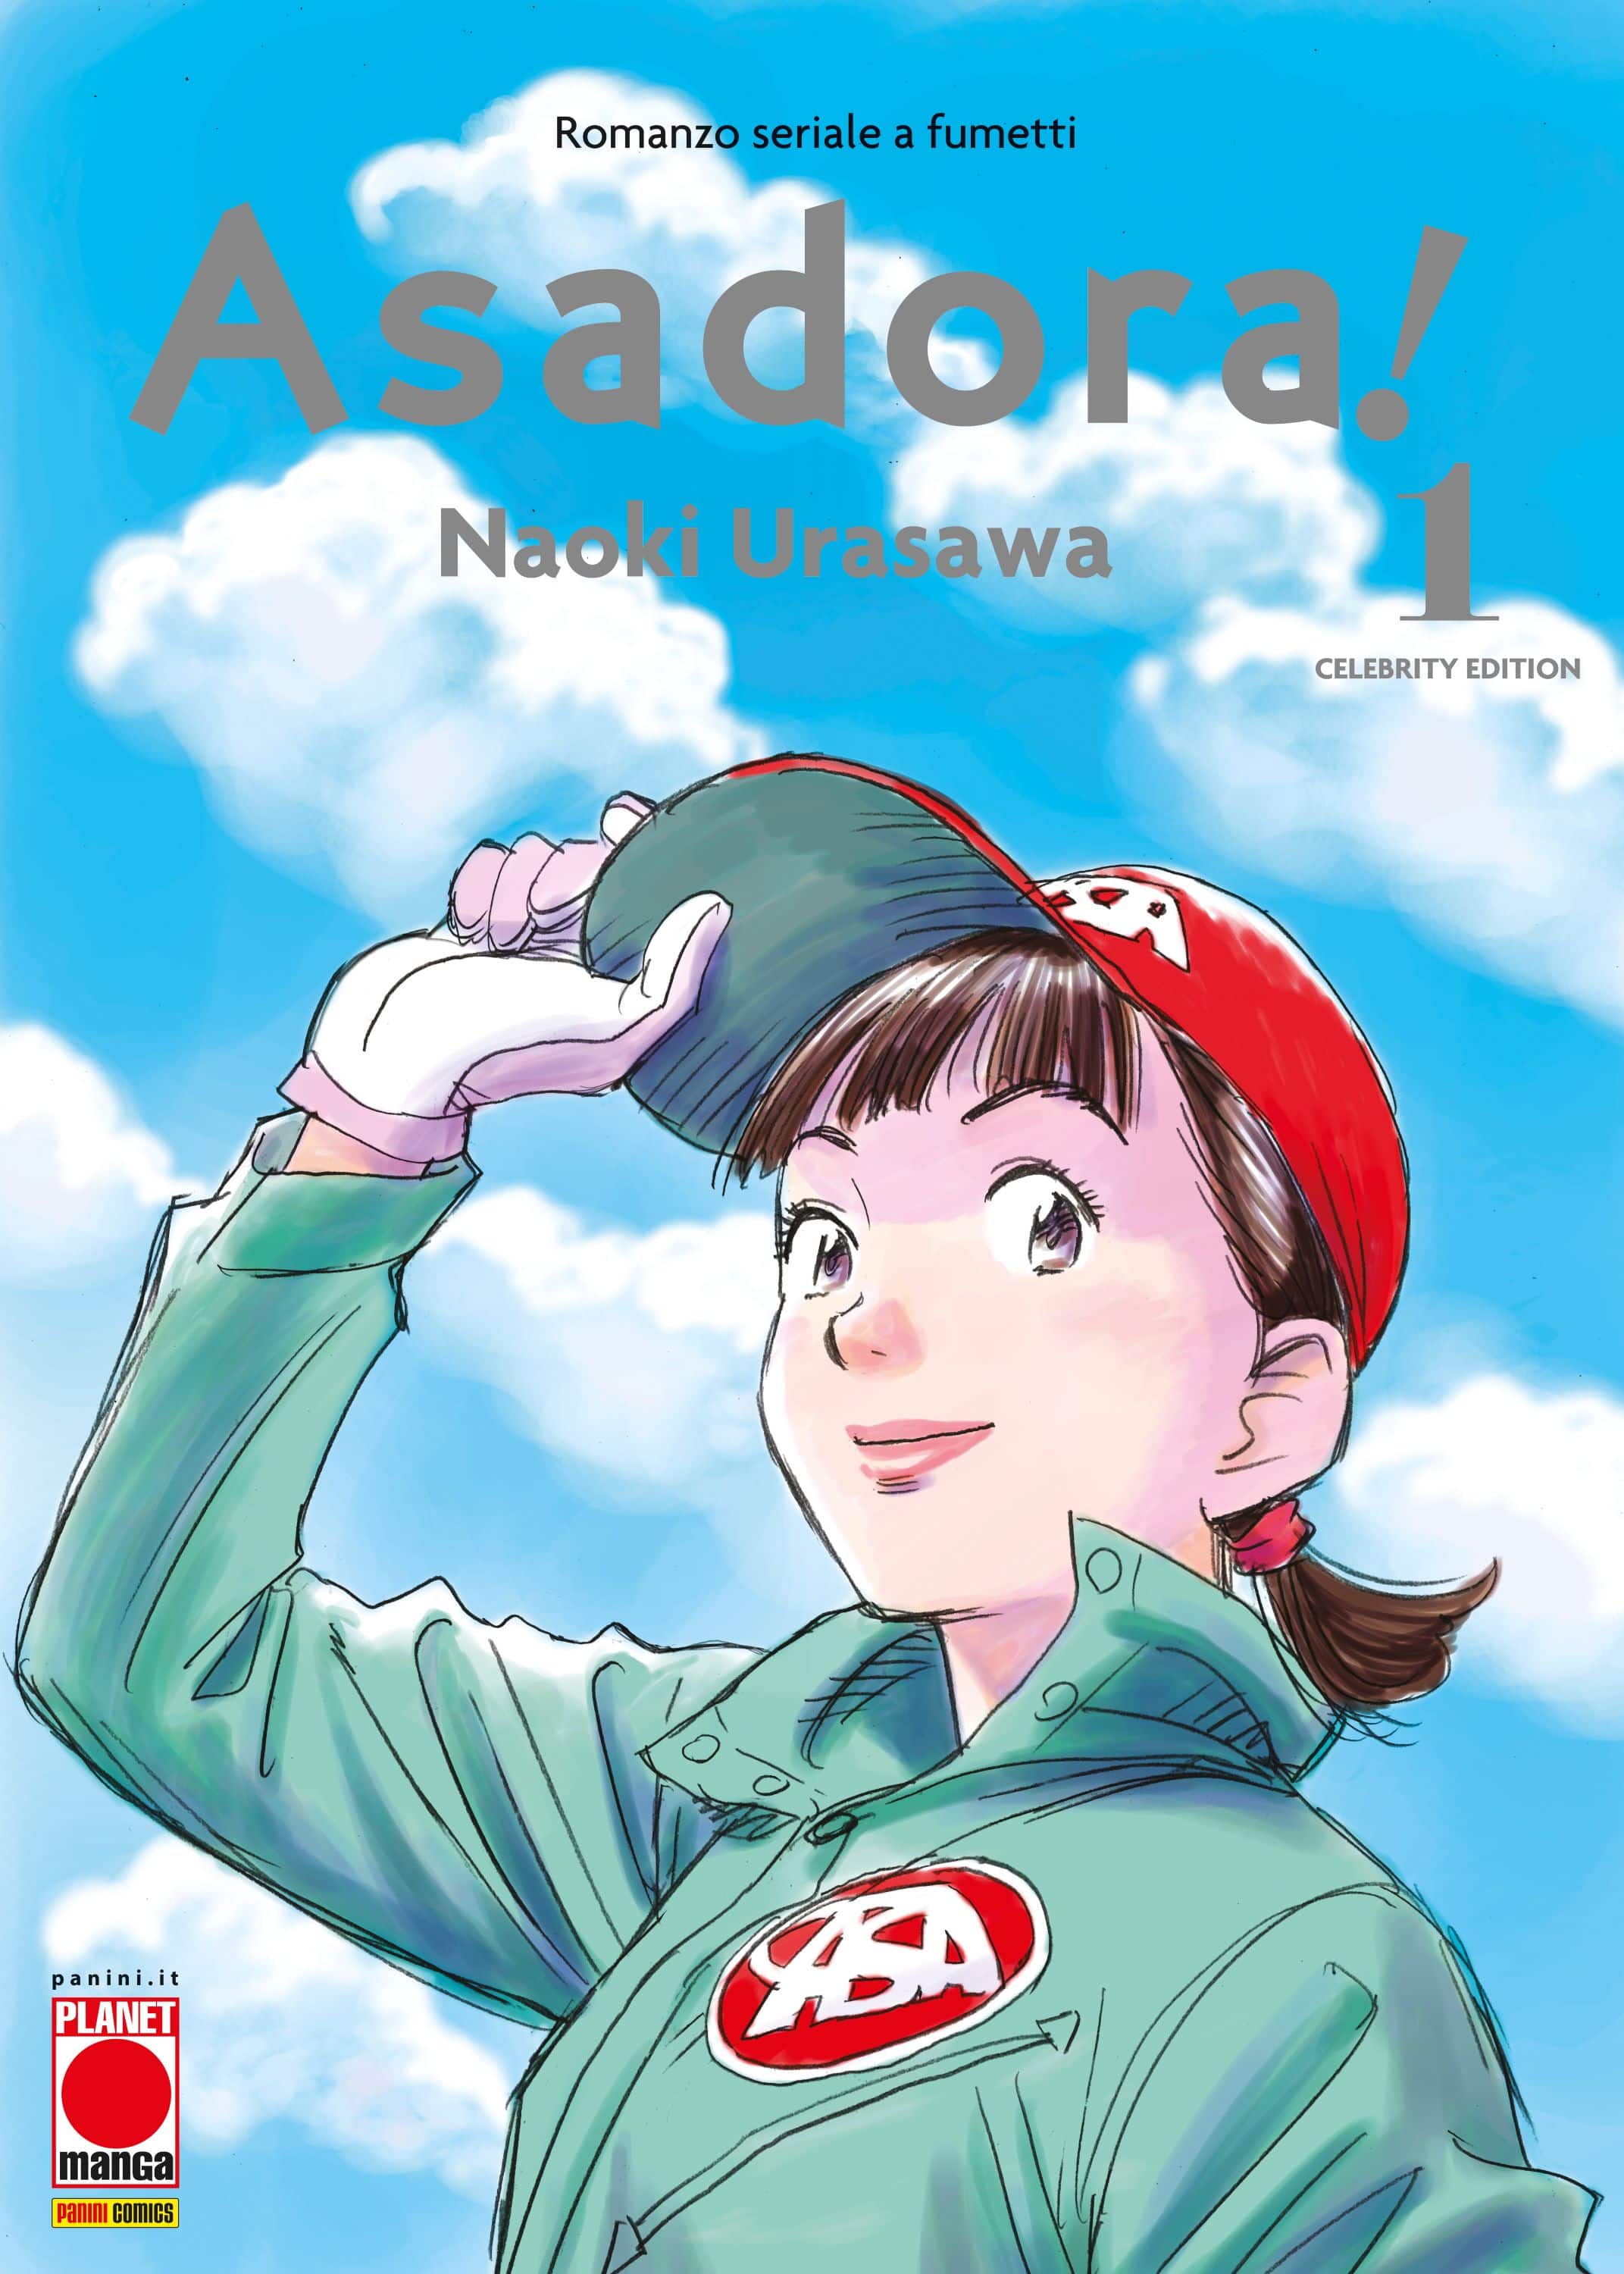 La nuova variant cover di Asadora volume 1, pubblicato in Italia da Panini Comics - Planet Manga